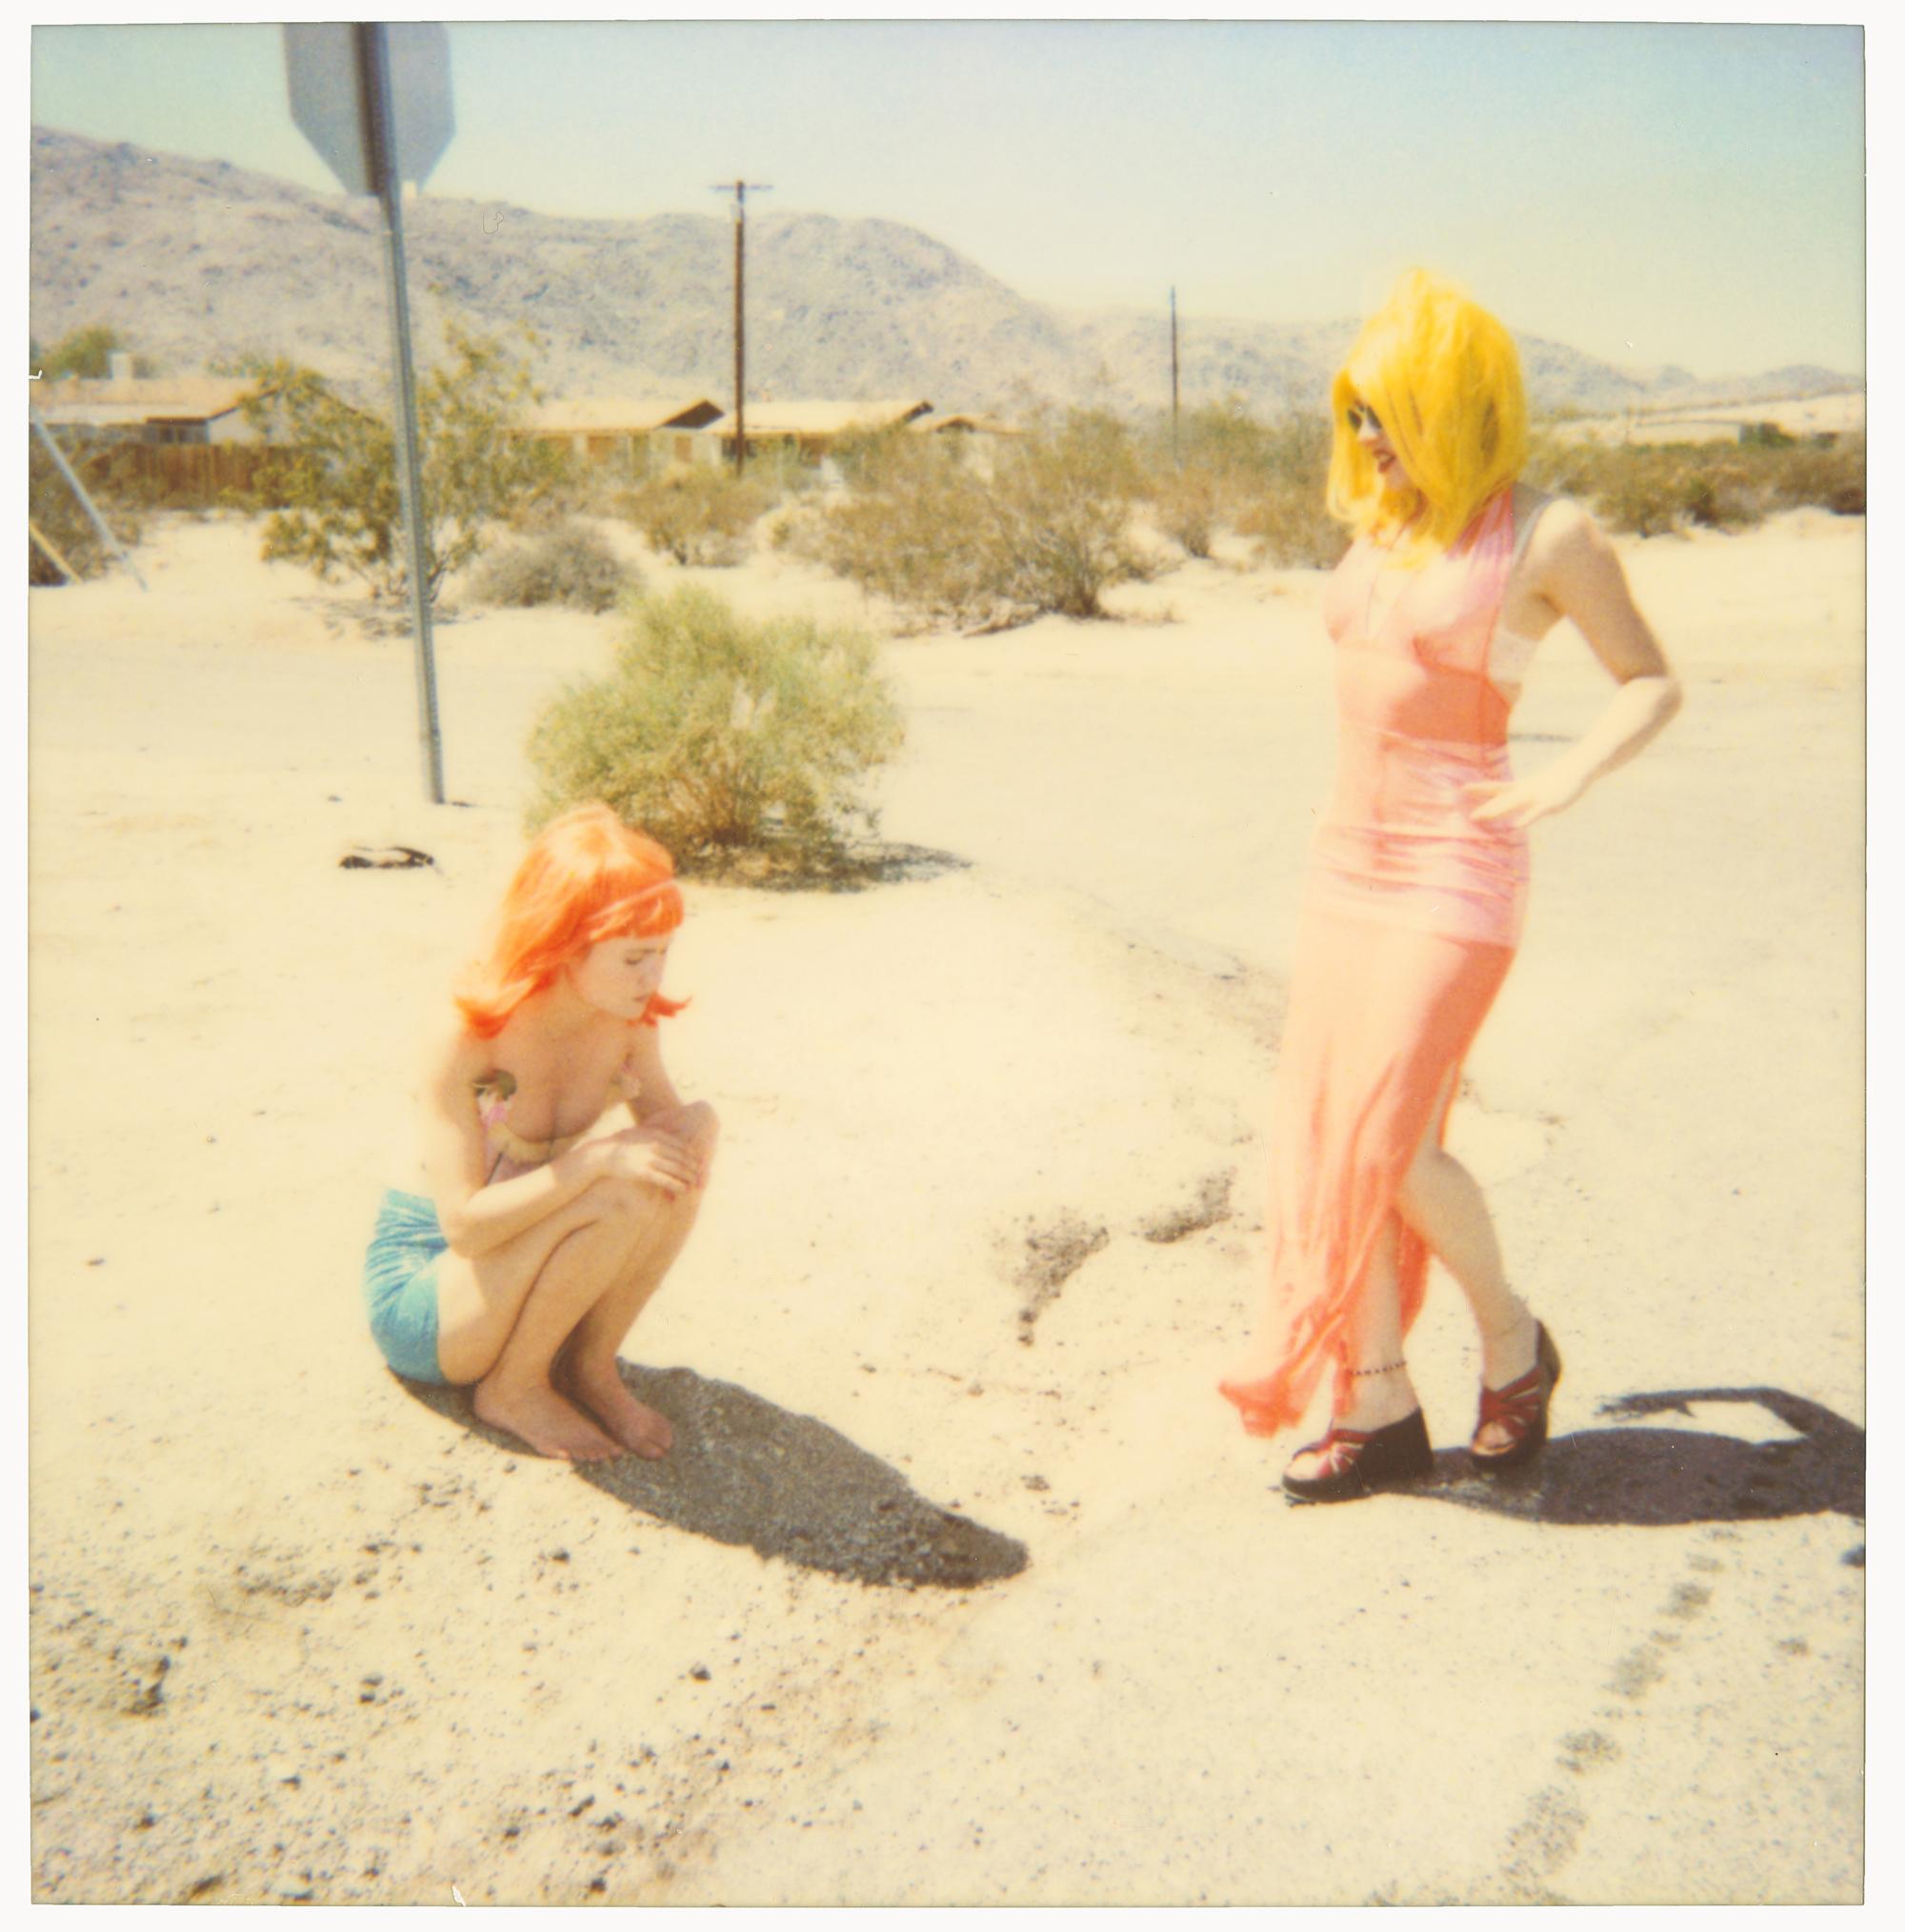 Stefanie Schneider Color Photograph – Radha und Max on Dirt Road (29 Palms, CA) – analog, Polaroid, zeitgenössisch